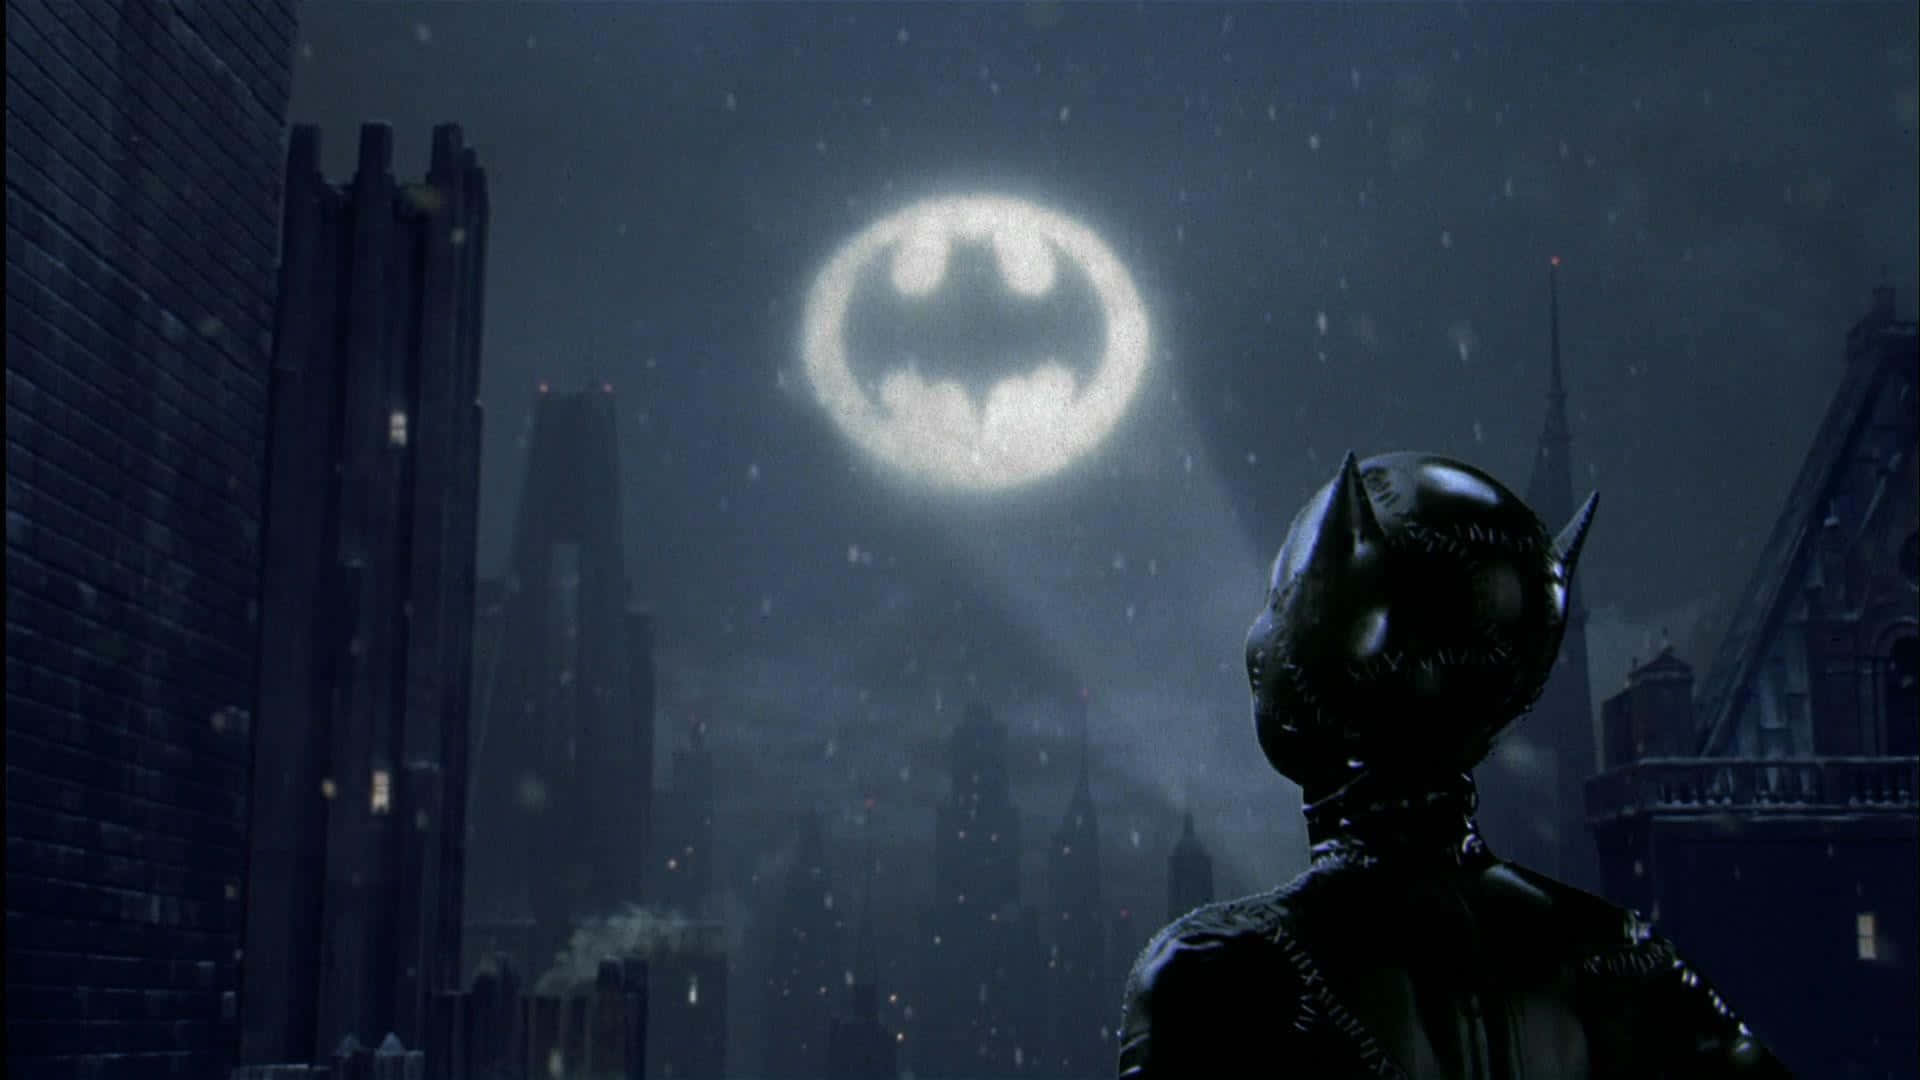 The Iconic Bat-signal Illuminating The Night Sky Over Gotham City Background